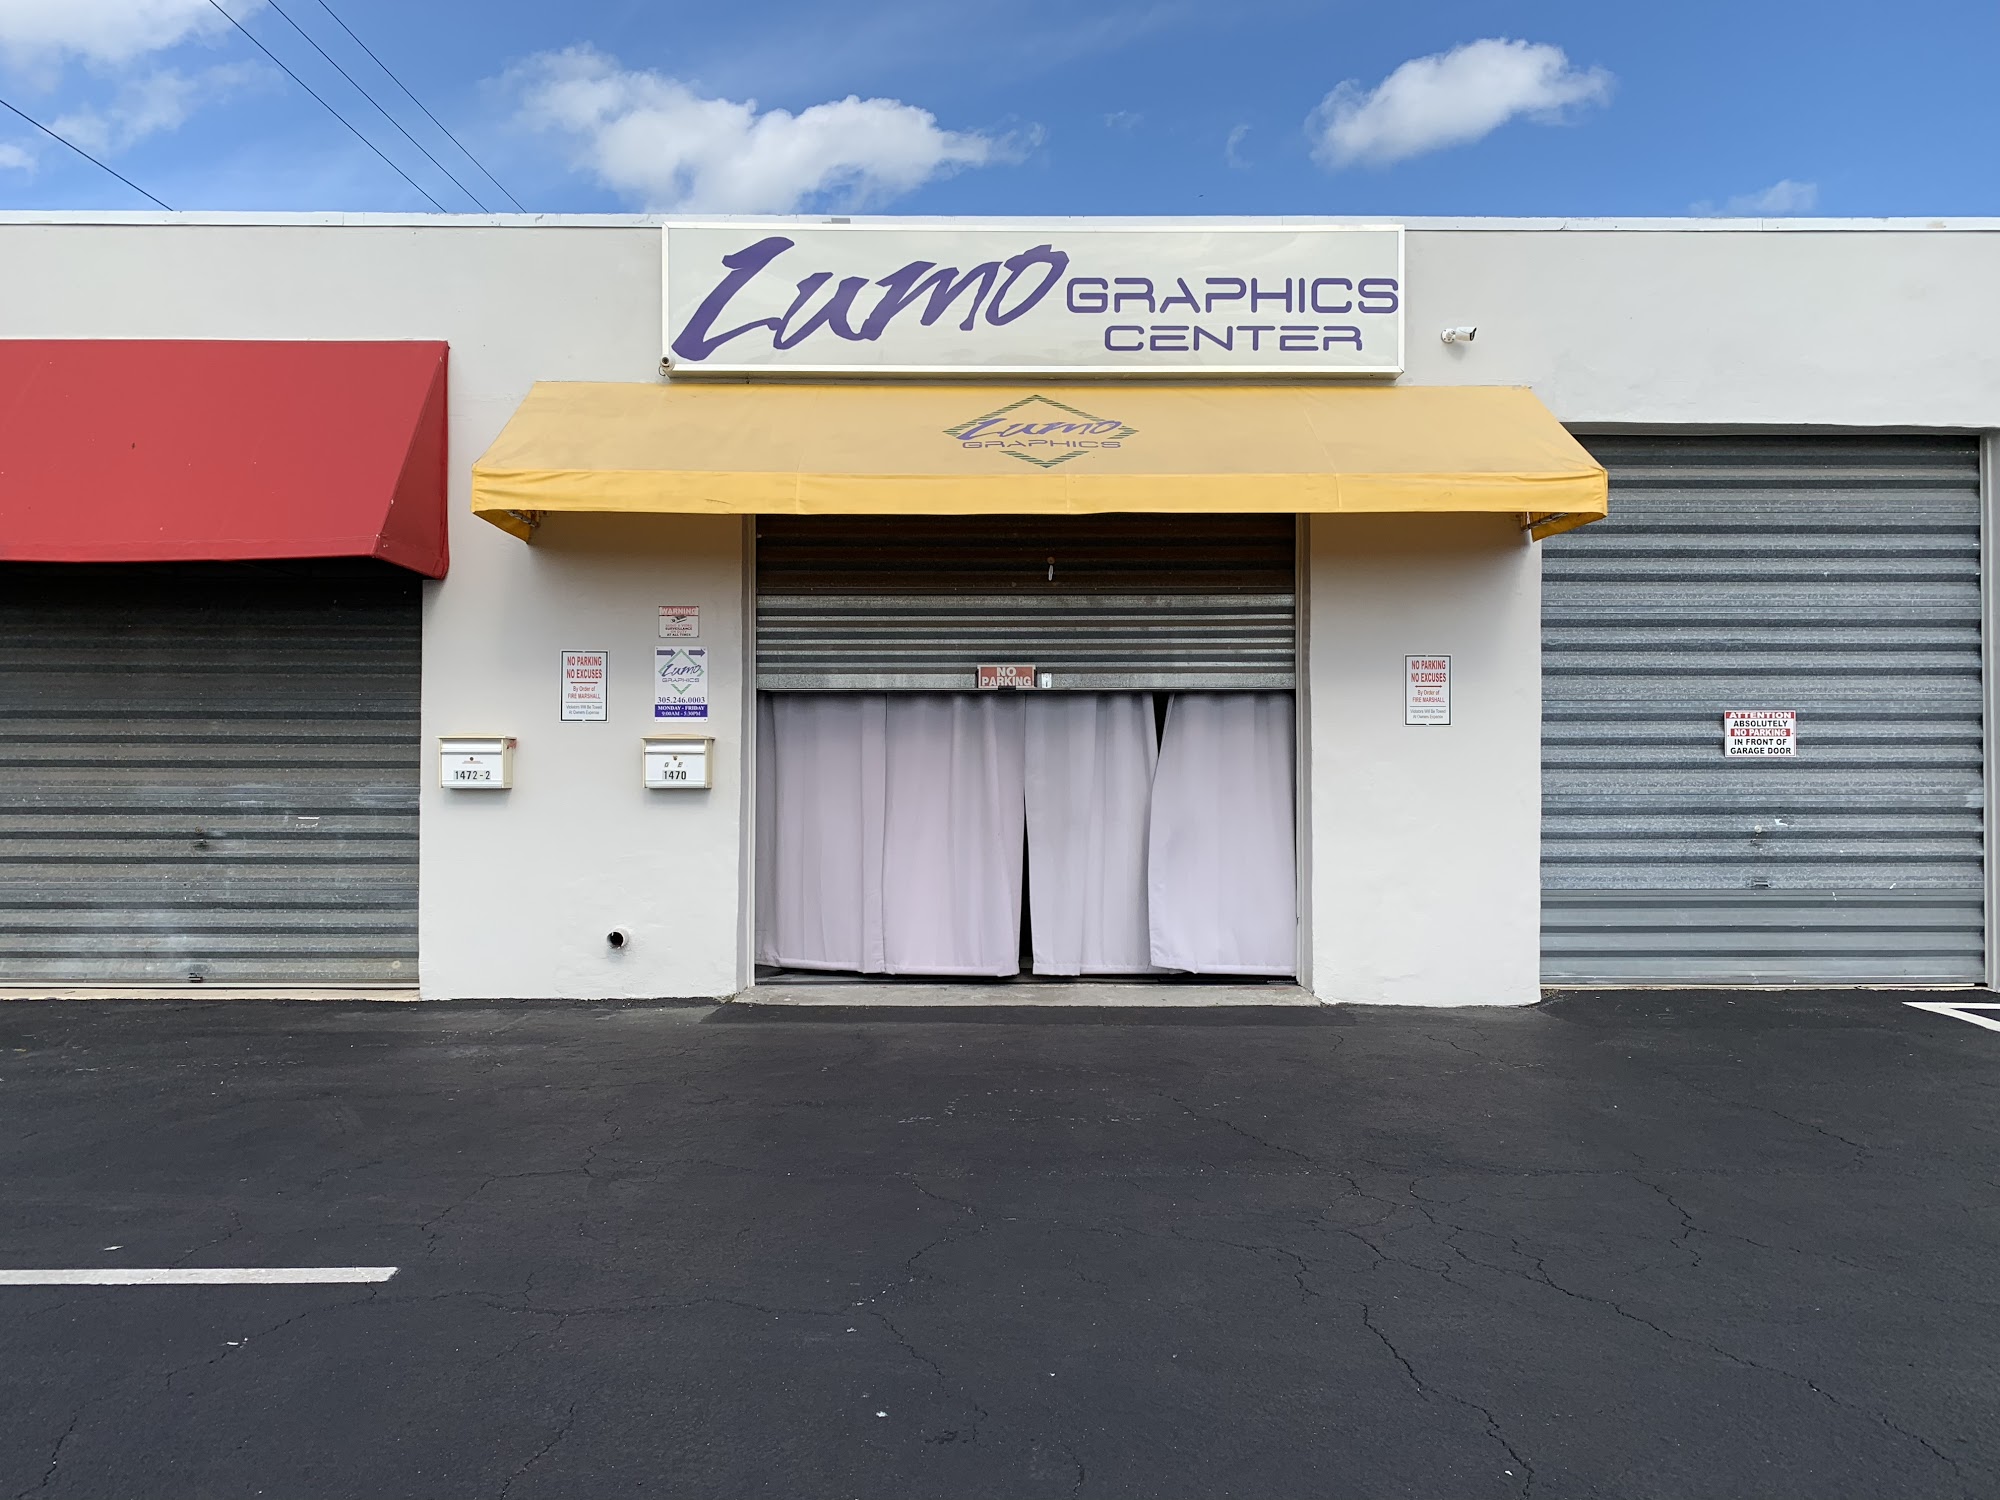 Lumo Graphics Center